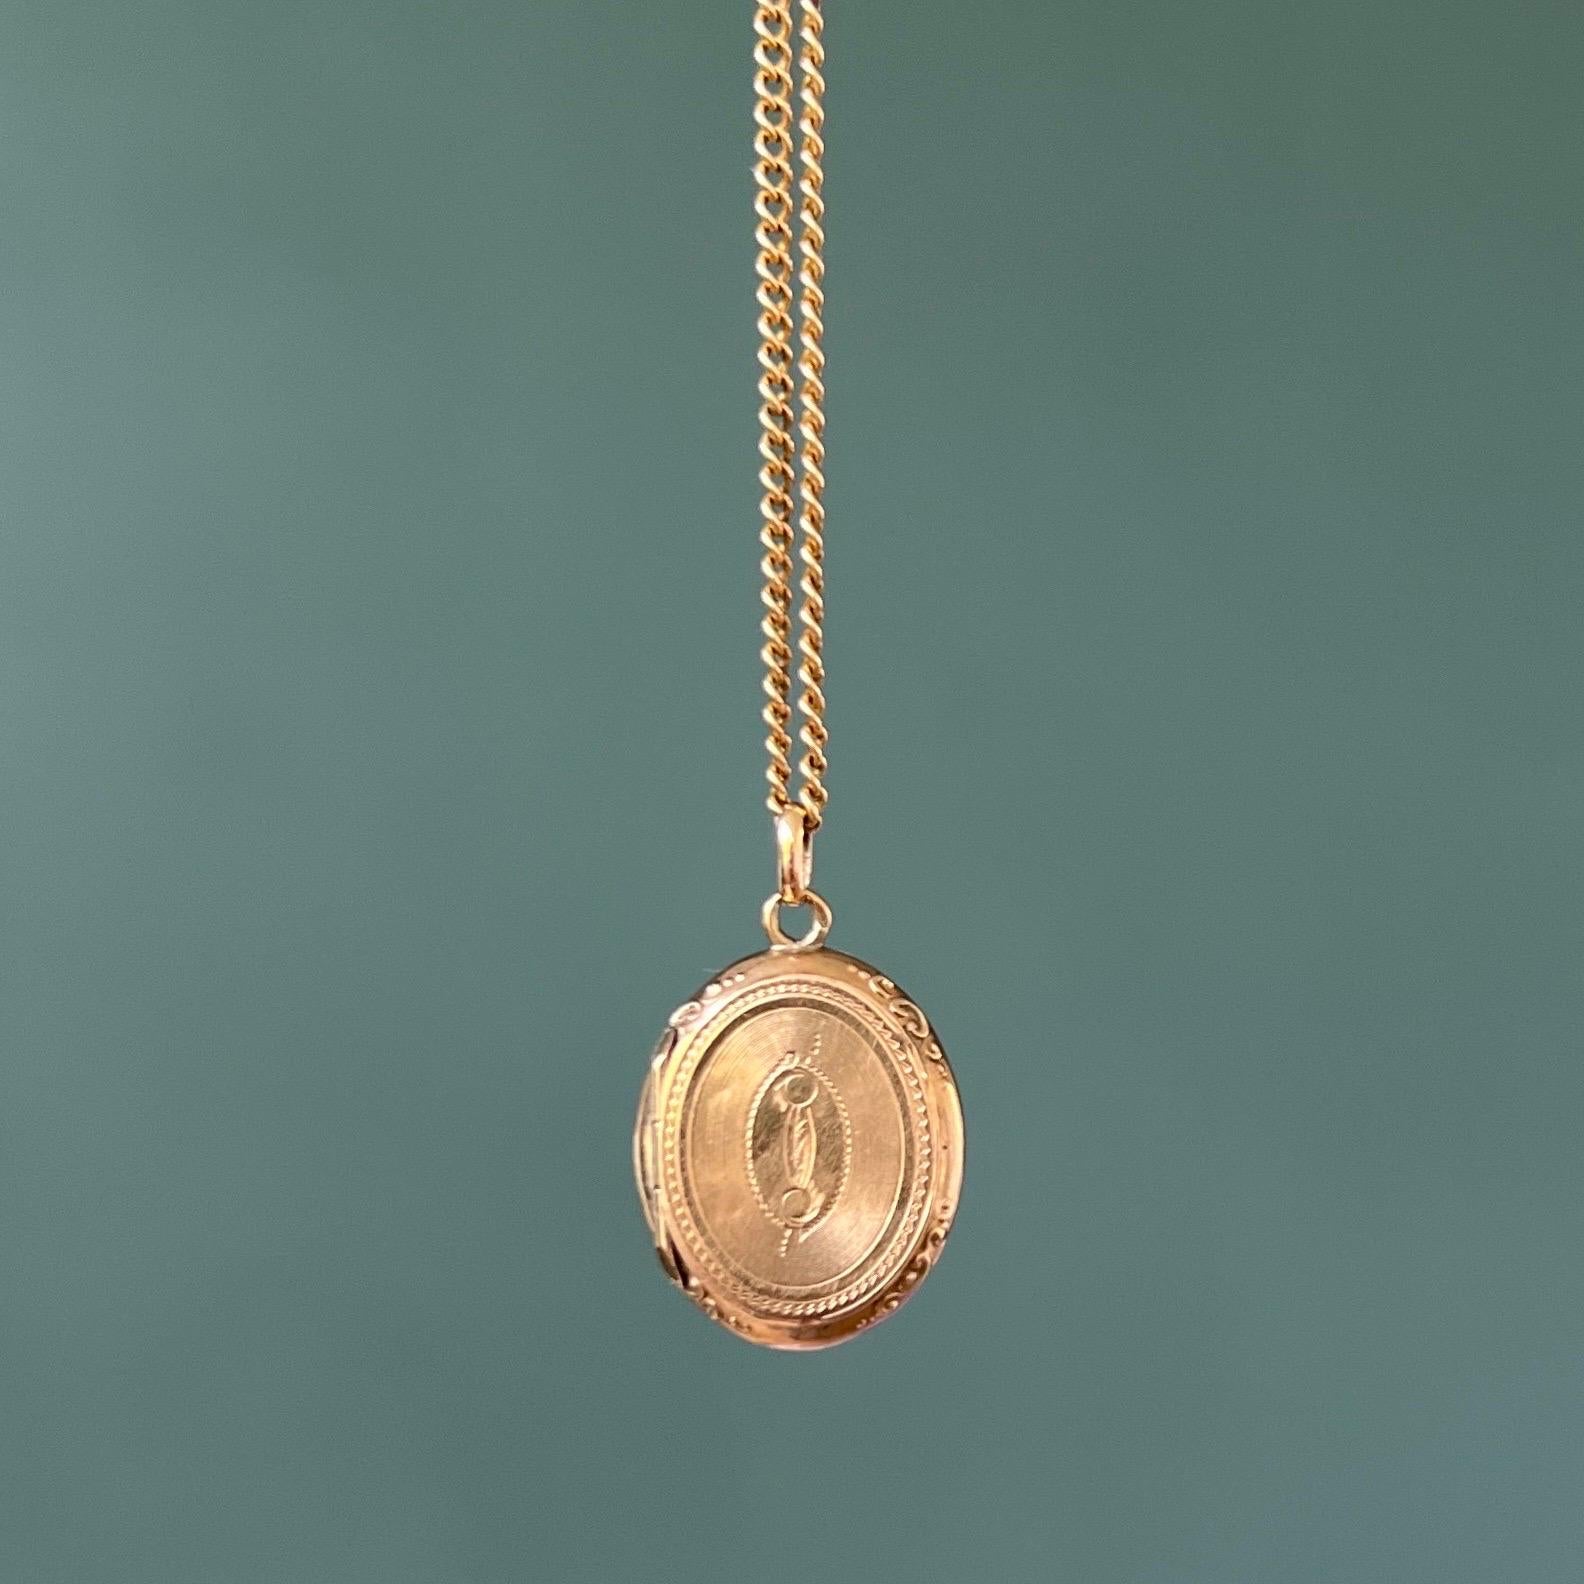 Dieser antike viktorianische Traueranhänger wurde einst nahe am Herzen getragen. Der Medaillon-Anhänger stammt aus dem 19. Jahrhundert und ist aus 14-karätigem Gold gefertigt. Die Vorder- und Rückseite dieses ovalen Anhängers ist wunderschön mit